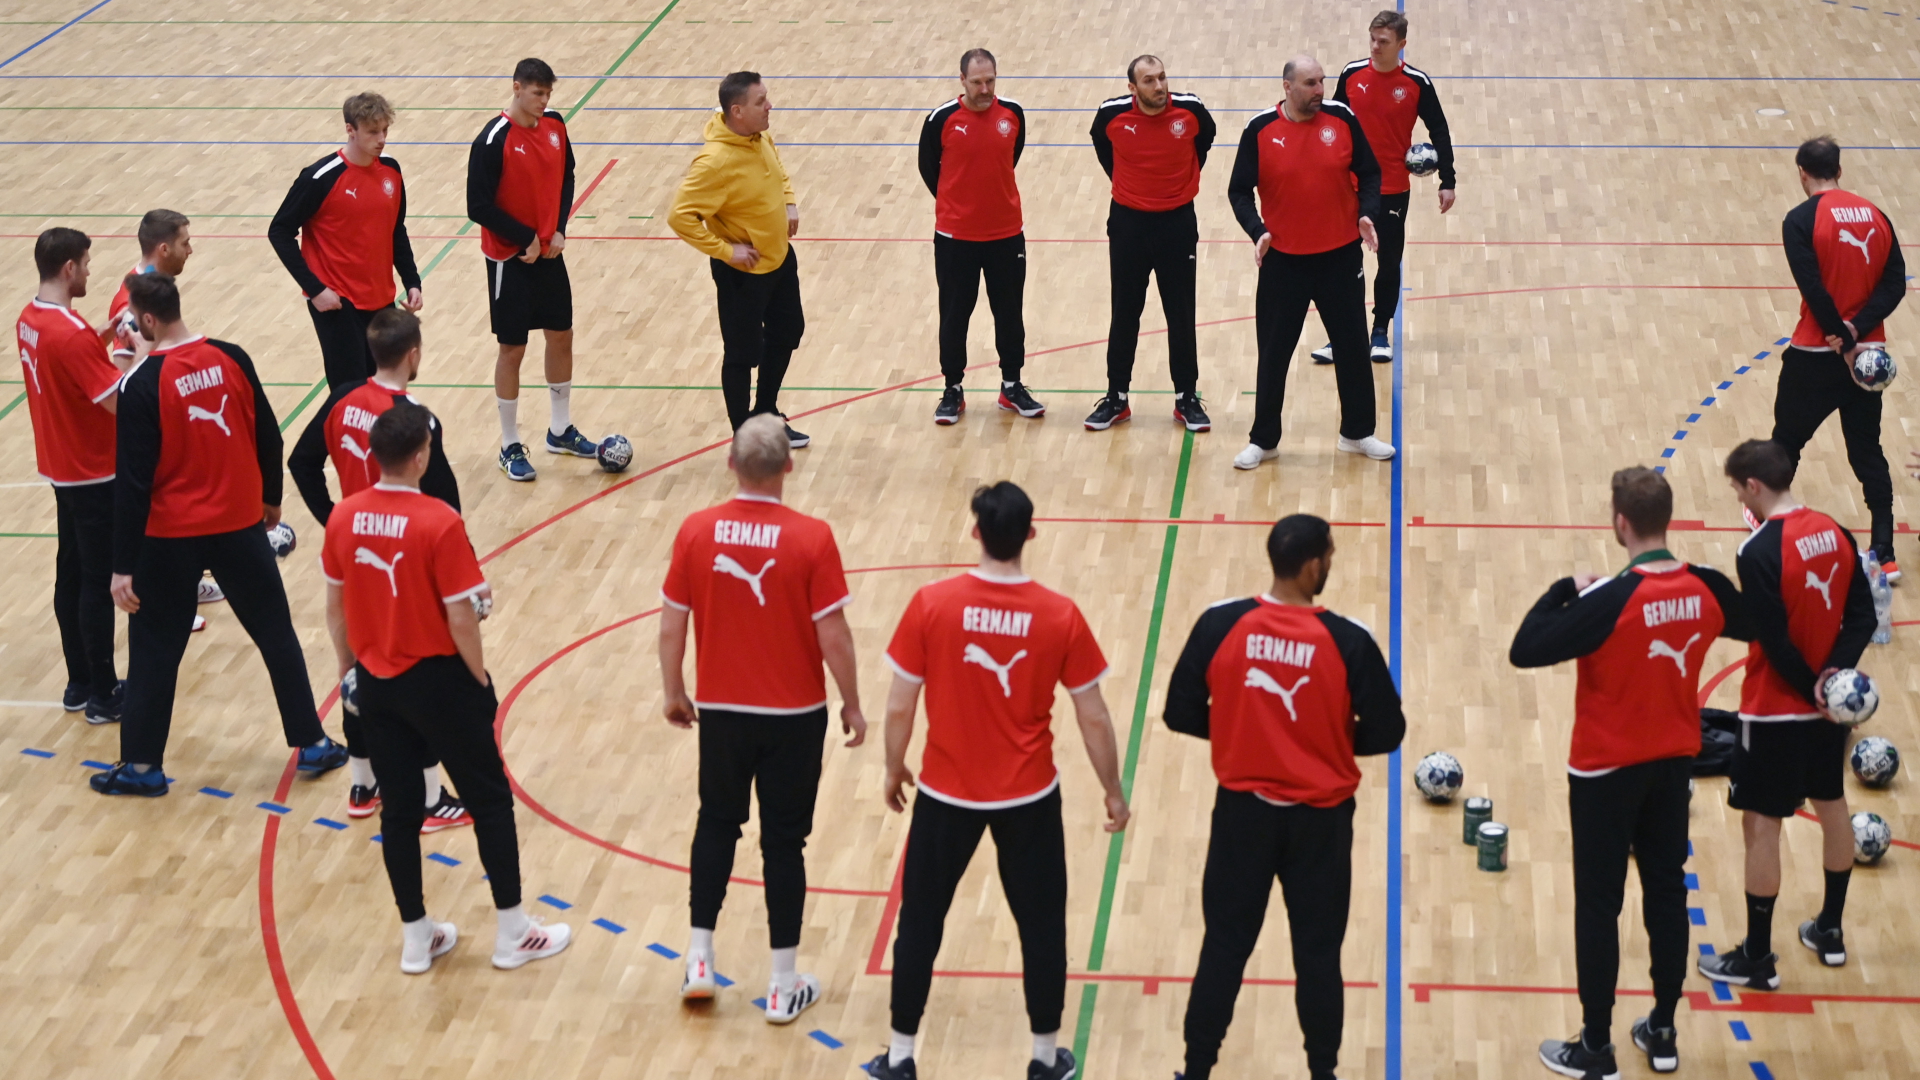 Die deutschen Handball-Nationalmannschaft steht zu Beginn eines Trainings zusammen auf dem Spielfeld. | dpa